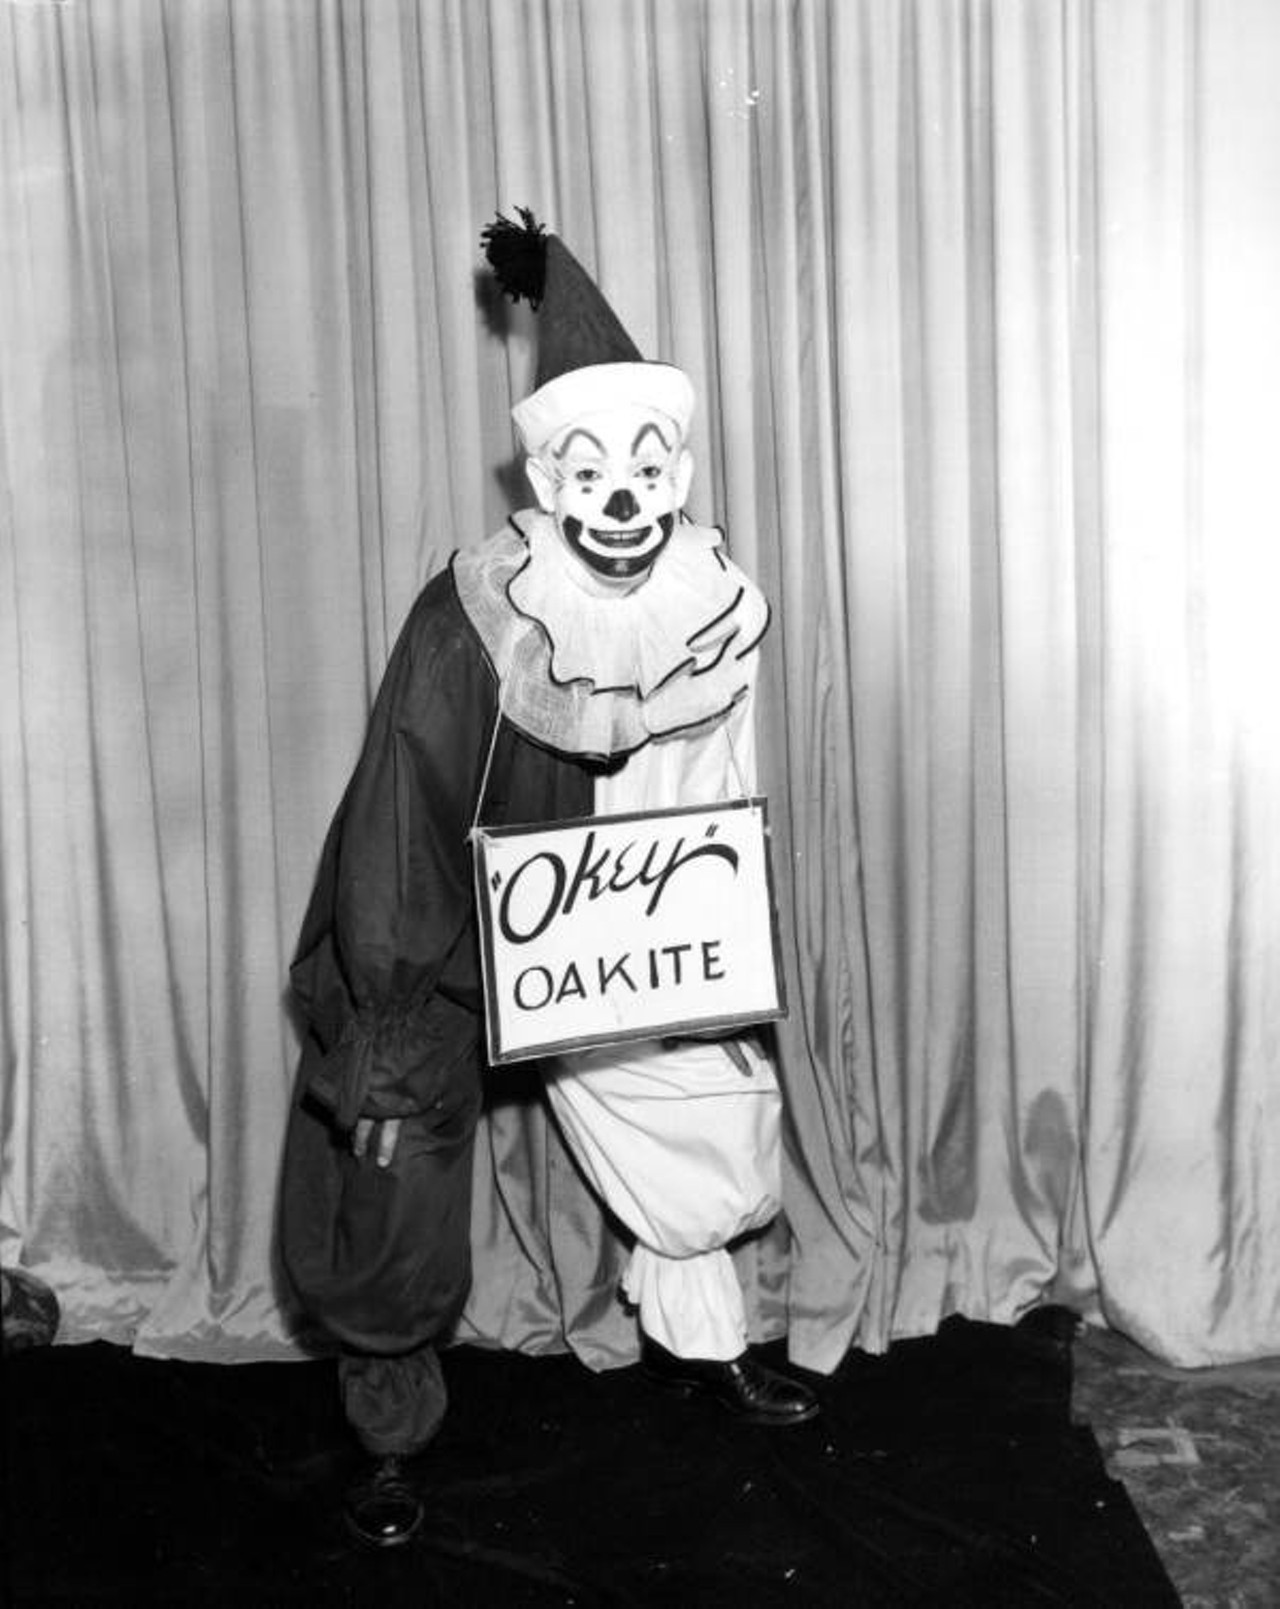 A clown with a sign (via floridamemory.com)